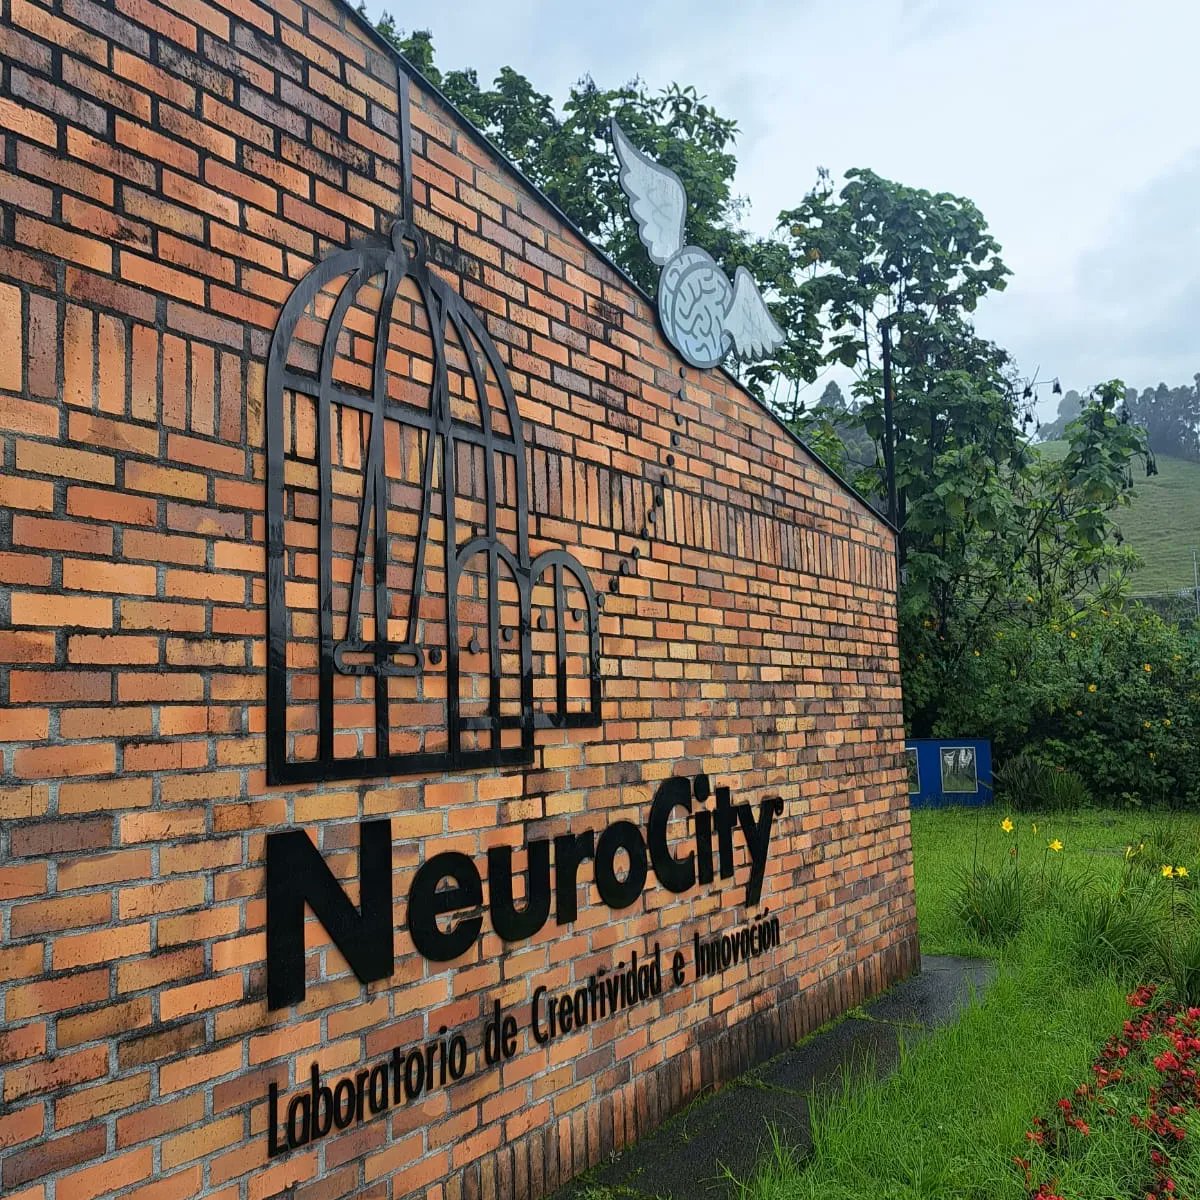 Hoy estamos desde NeuroCity en el BootCamp de @lncubar en la convocatoria de @startupfactory_oficial